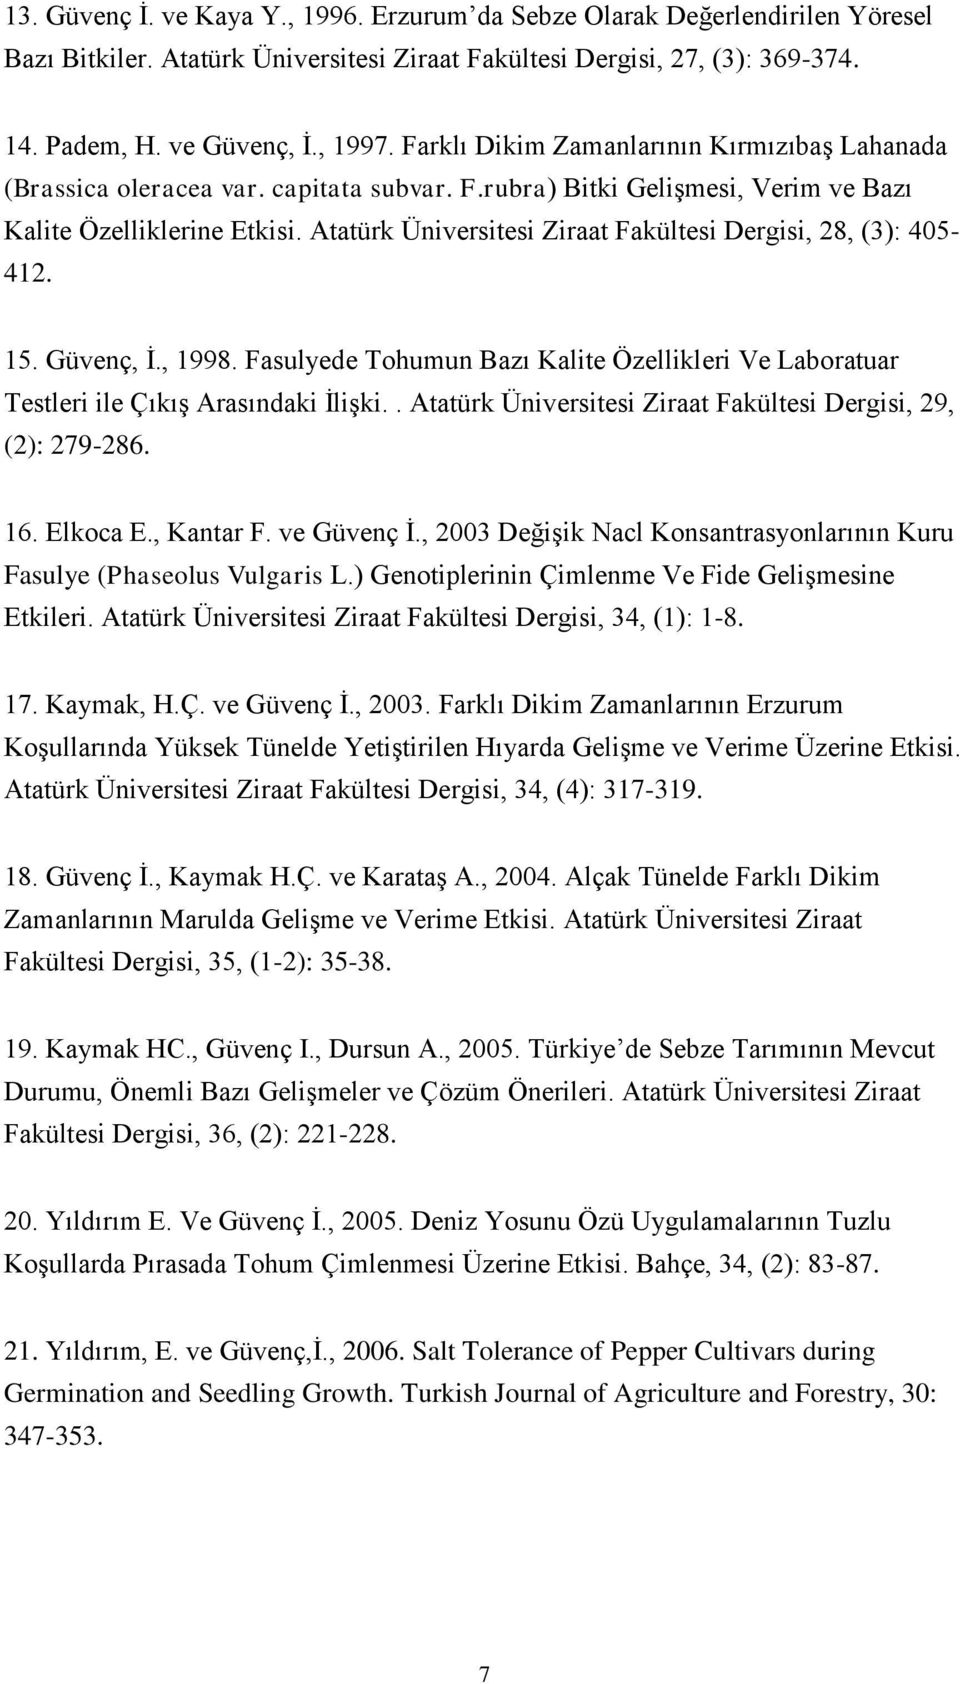 Atatürk Üniversitesi Ziraat Fakültesi Dergisi, 28, (3): 405-412. 15. Güvenç, İ., 1998. Fasulyede Tohumun Bazı Kalite Özellikleri Ve Laboratuar Testleri ile Çıkış Arasındaki İlişki.